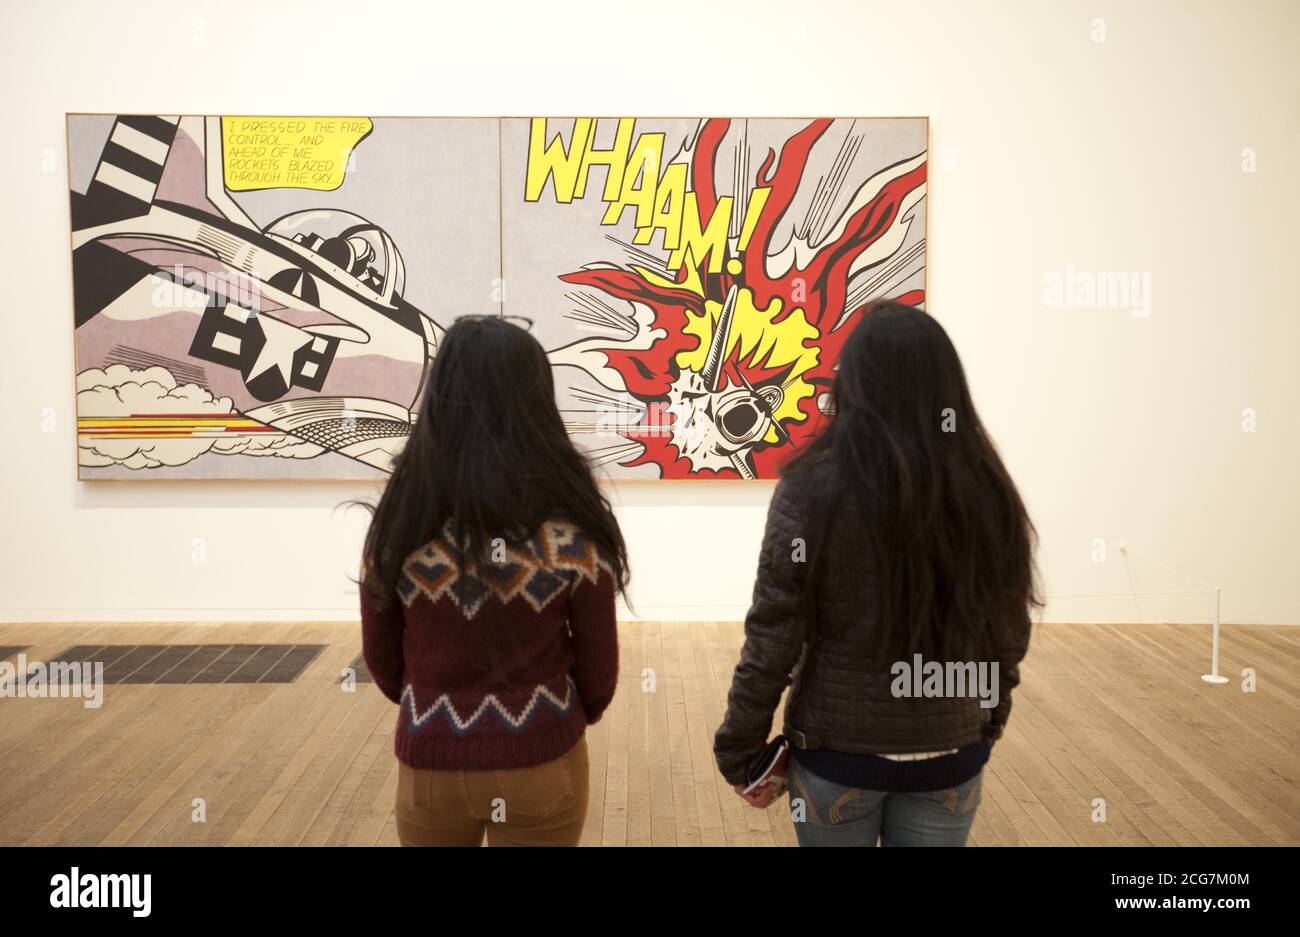 Junge Londoners, die nicht in Ausbildung, Beschäftigung oder Ausbildung sind, erhalten eine exklusive Tour durch Lichtenstein: A Retrospective im Rahmen eines öffentlichen Kunstbildungsprojekts des globalen Sponsors Bank of America Merrill Lynch, Graffiti Life und Tate Modern an der Tate Modern, London. Stockfoto